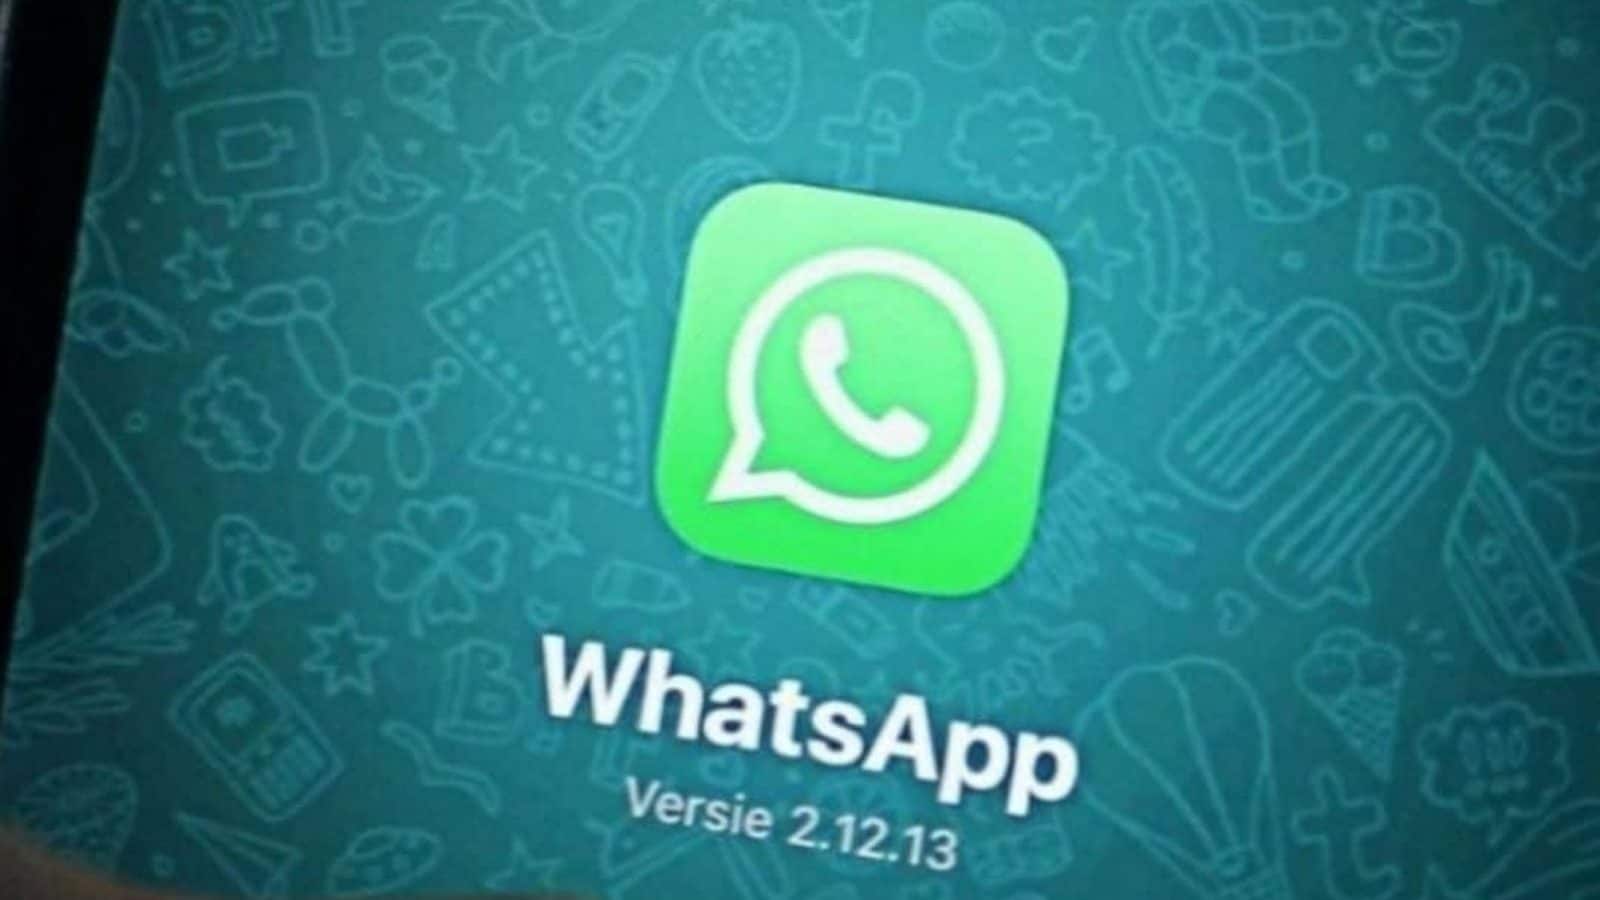 WhatsApp añade una nueva capa de seguridad con doble verificación para evitar que hackeen las cuentas de los usuarios